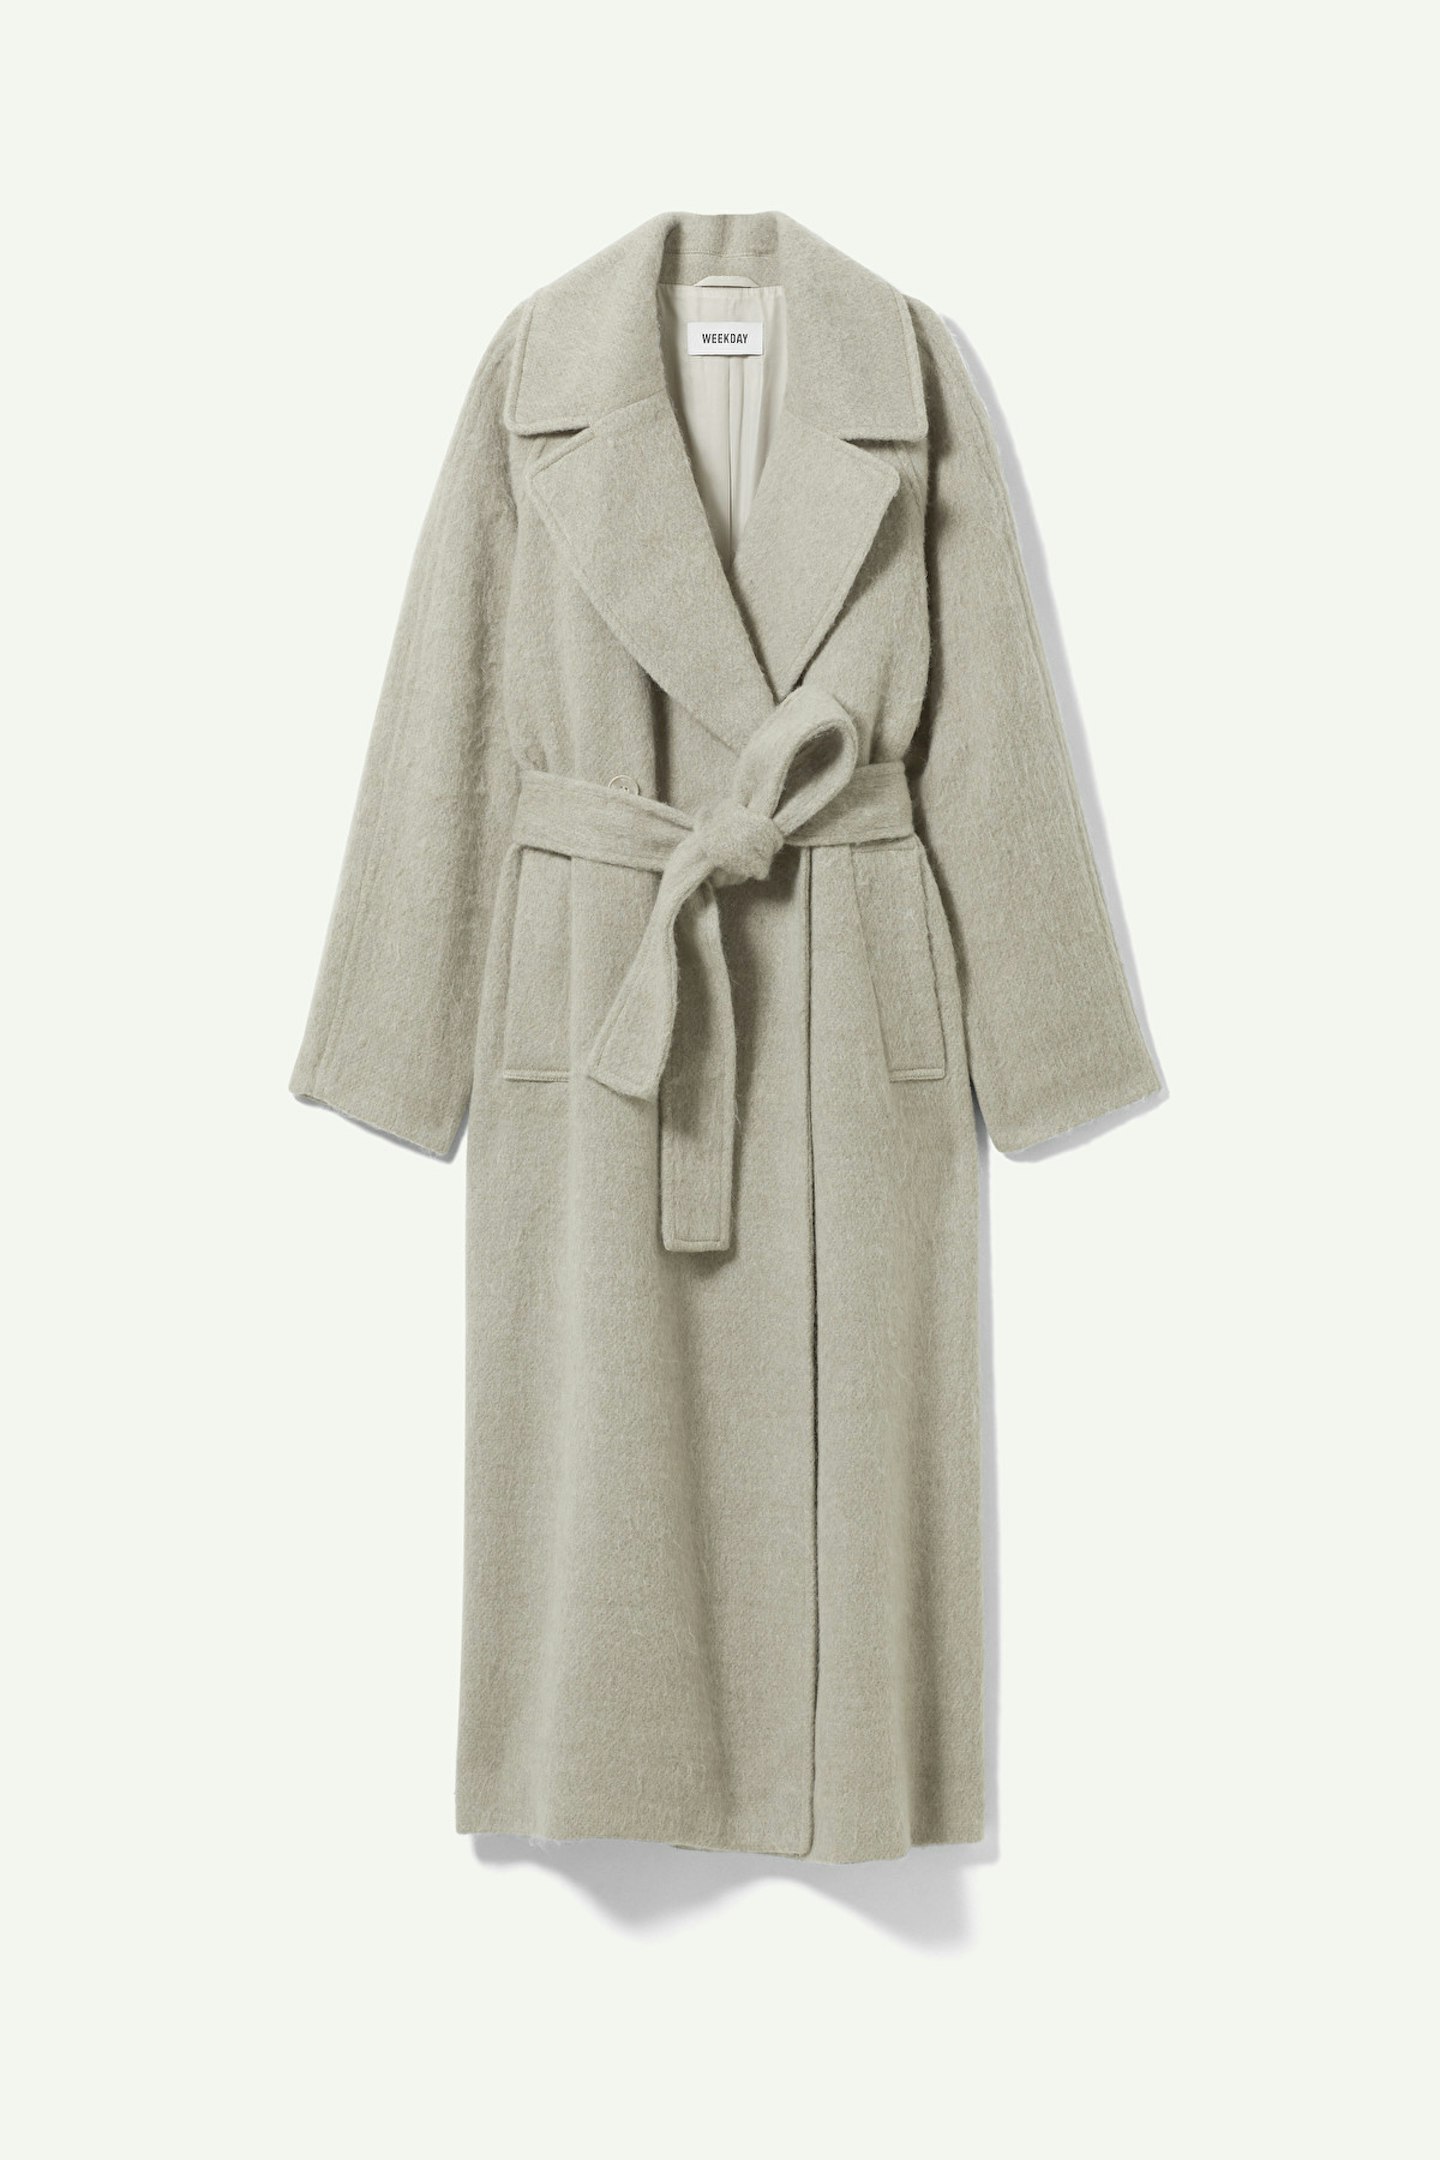 Weekday, Tie-Waist Wool-Blend Coat, £125